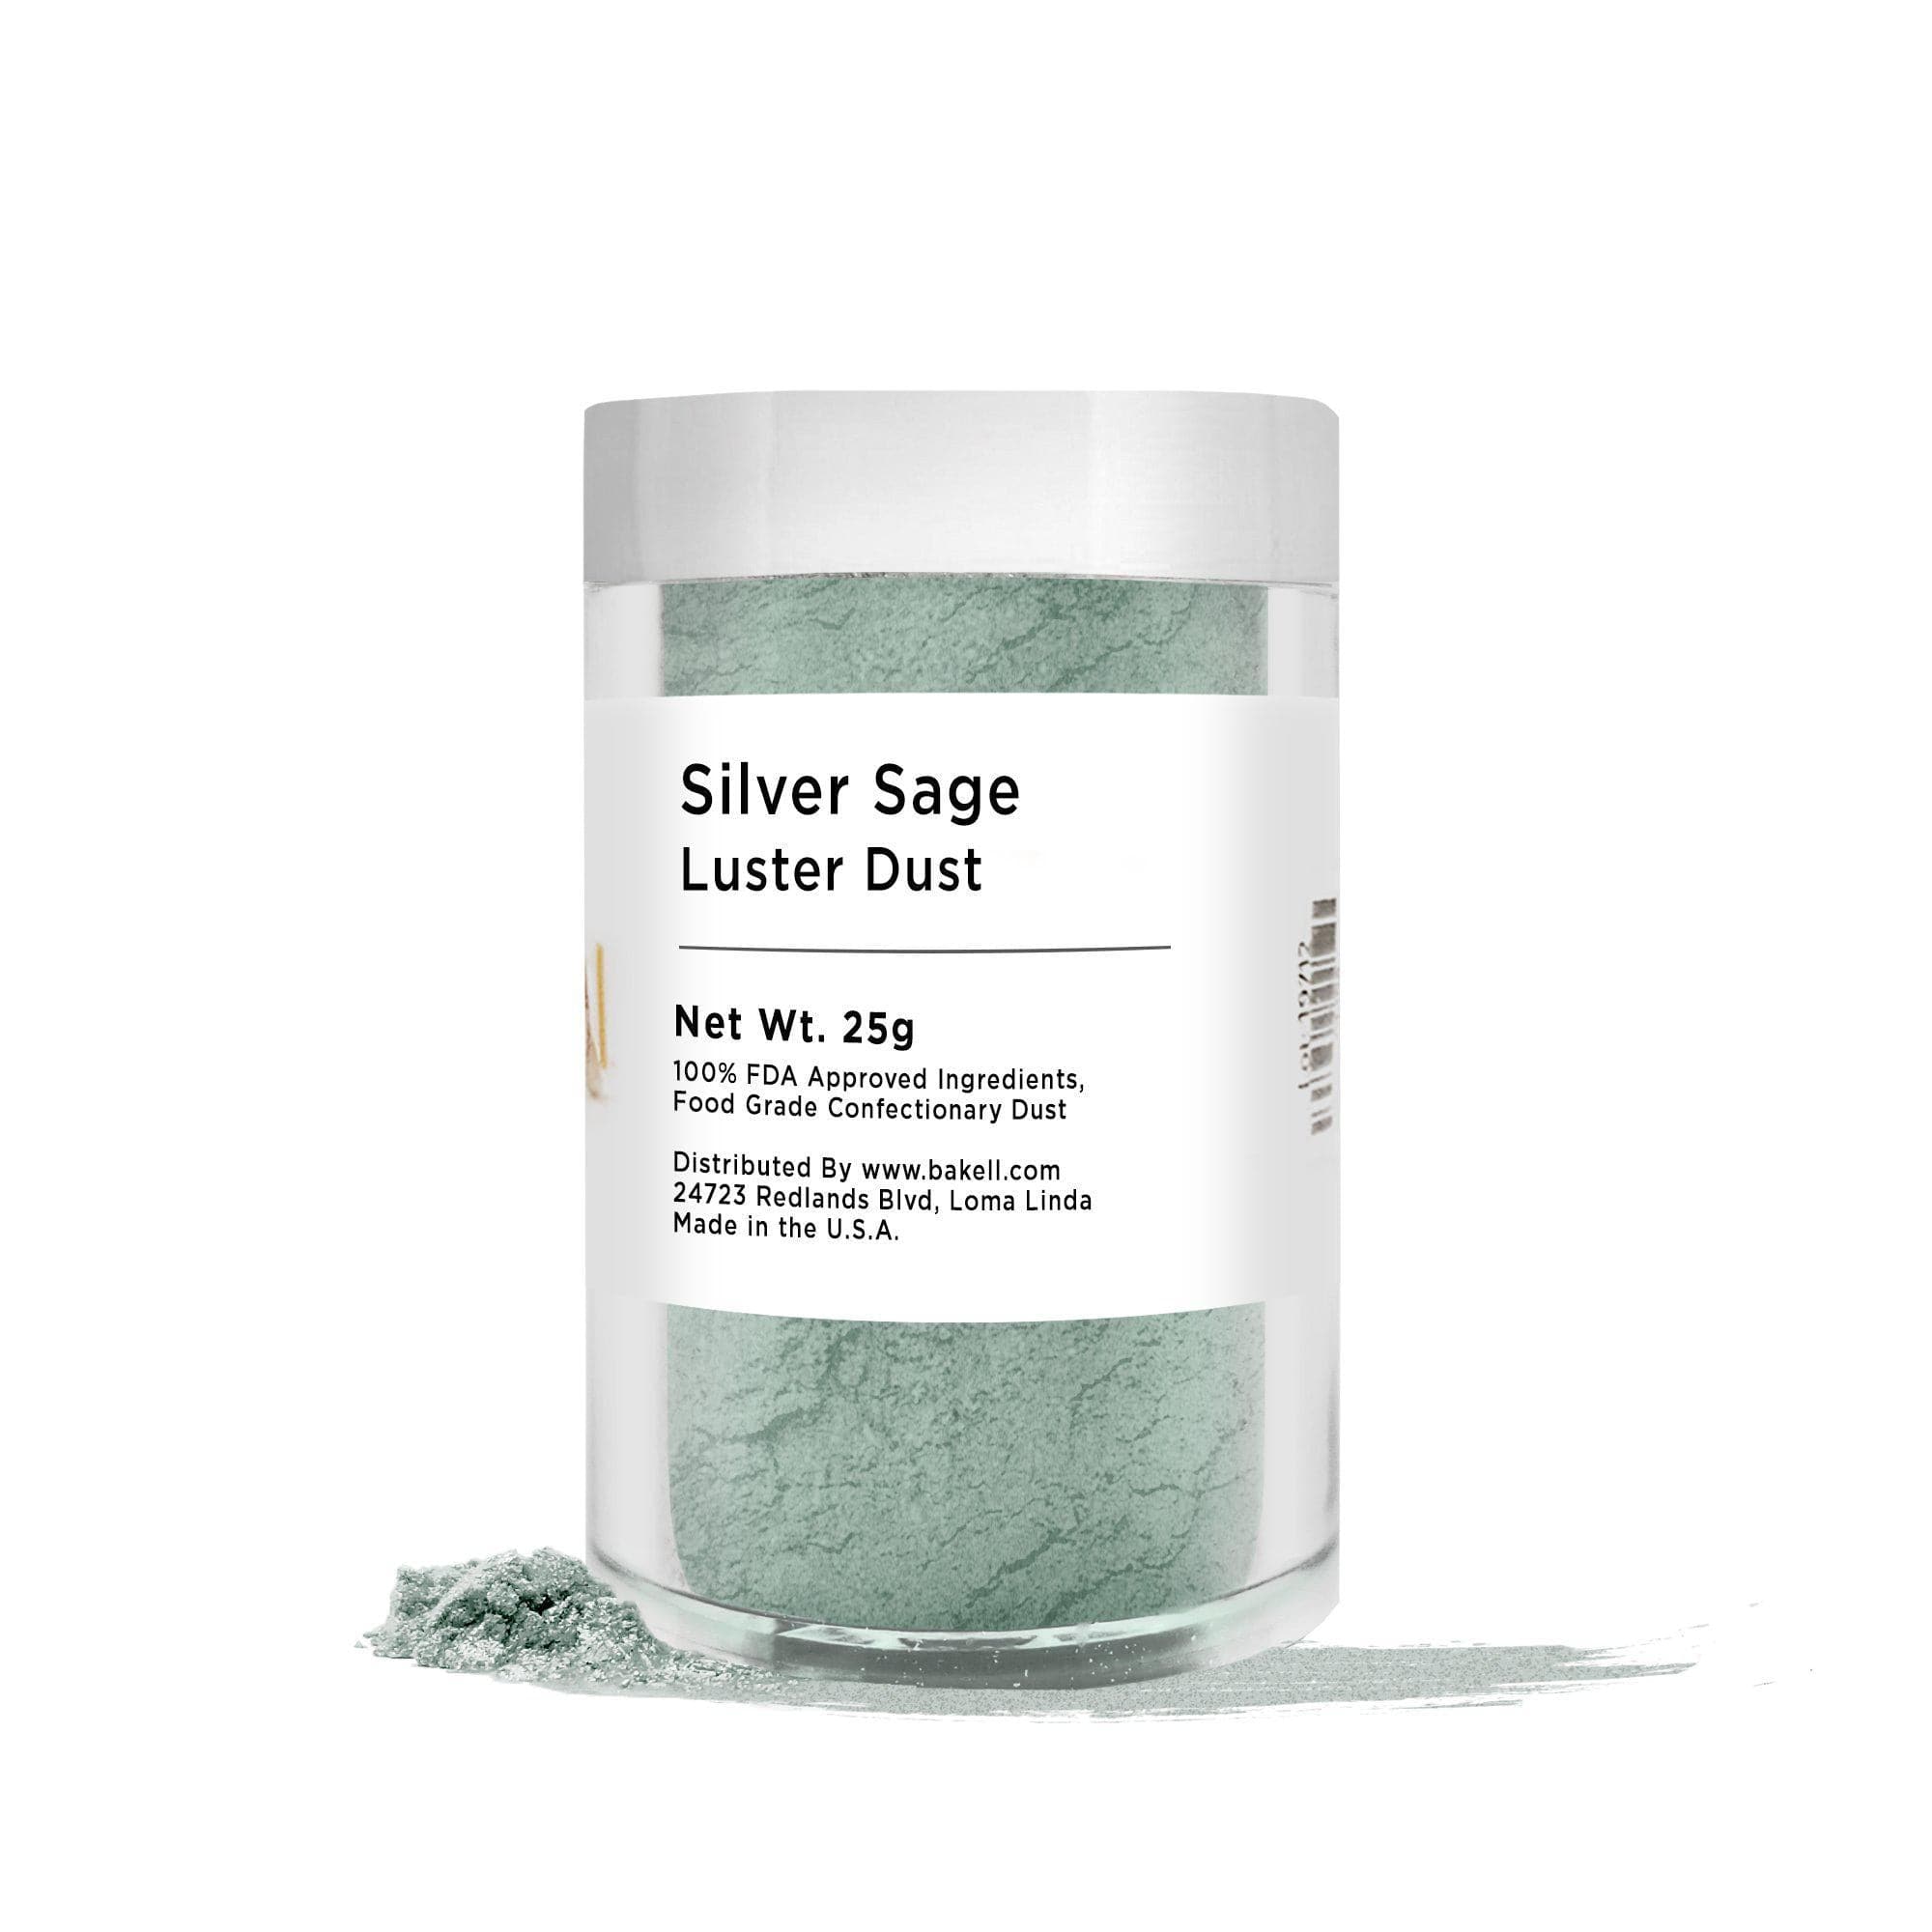 Silver Sage